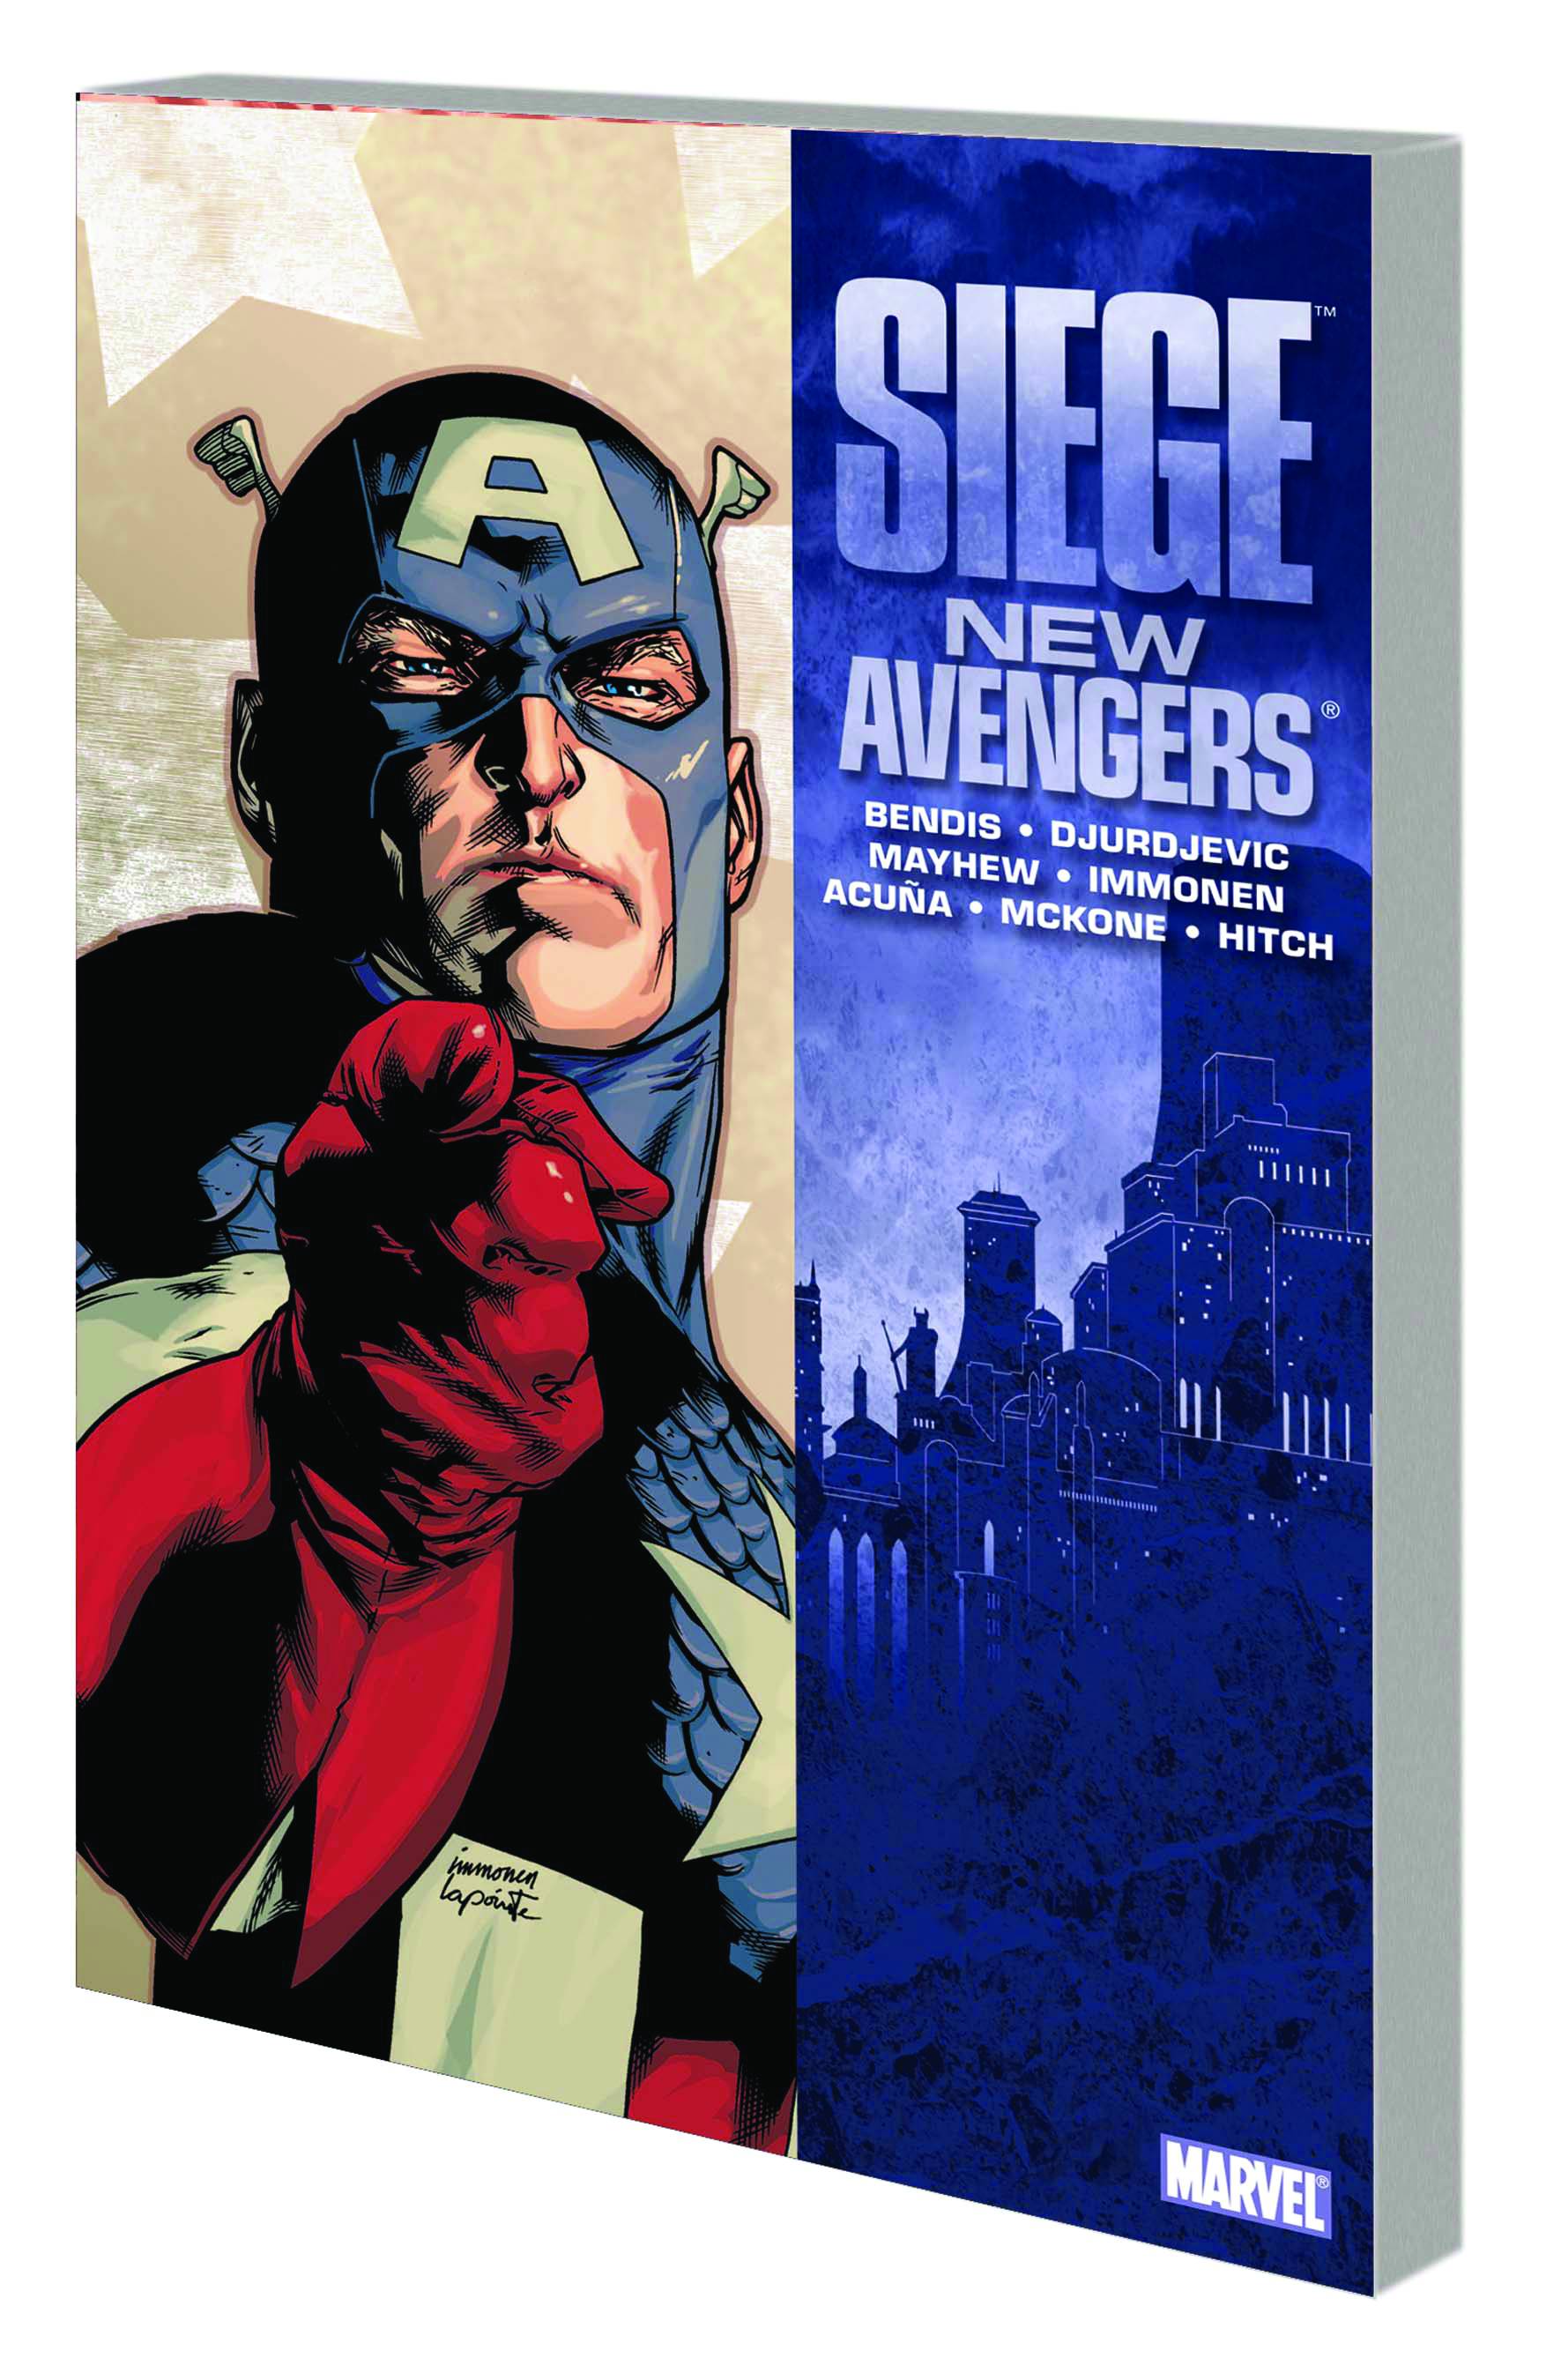 Siege New Avengers Graphic Novel